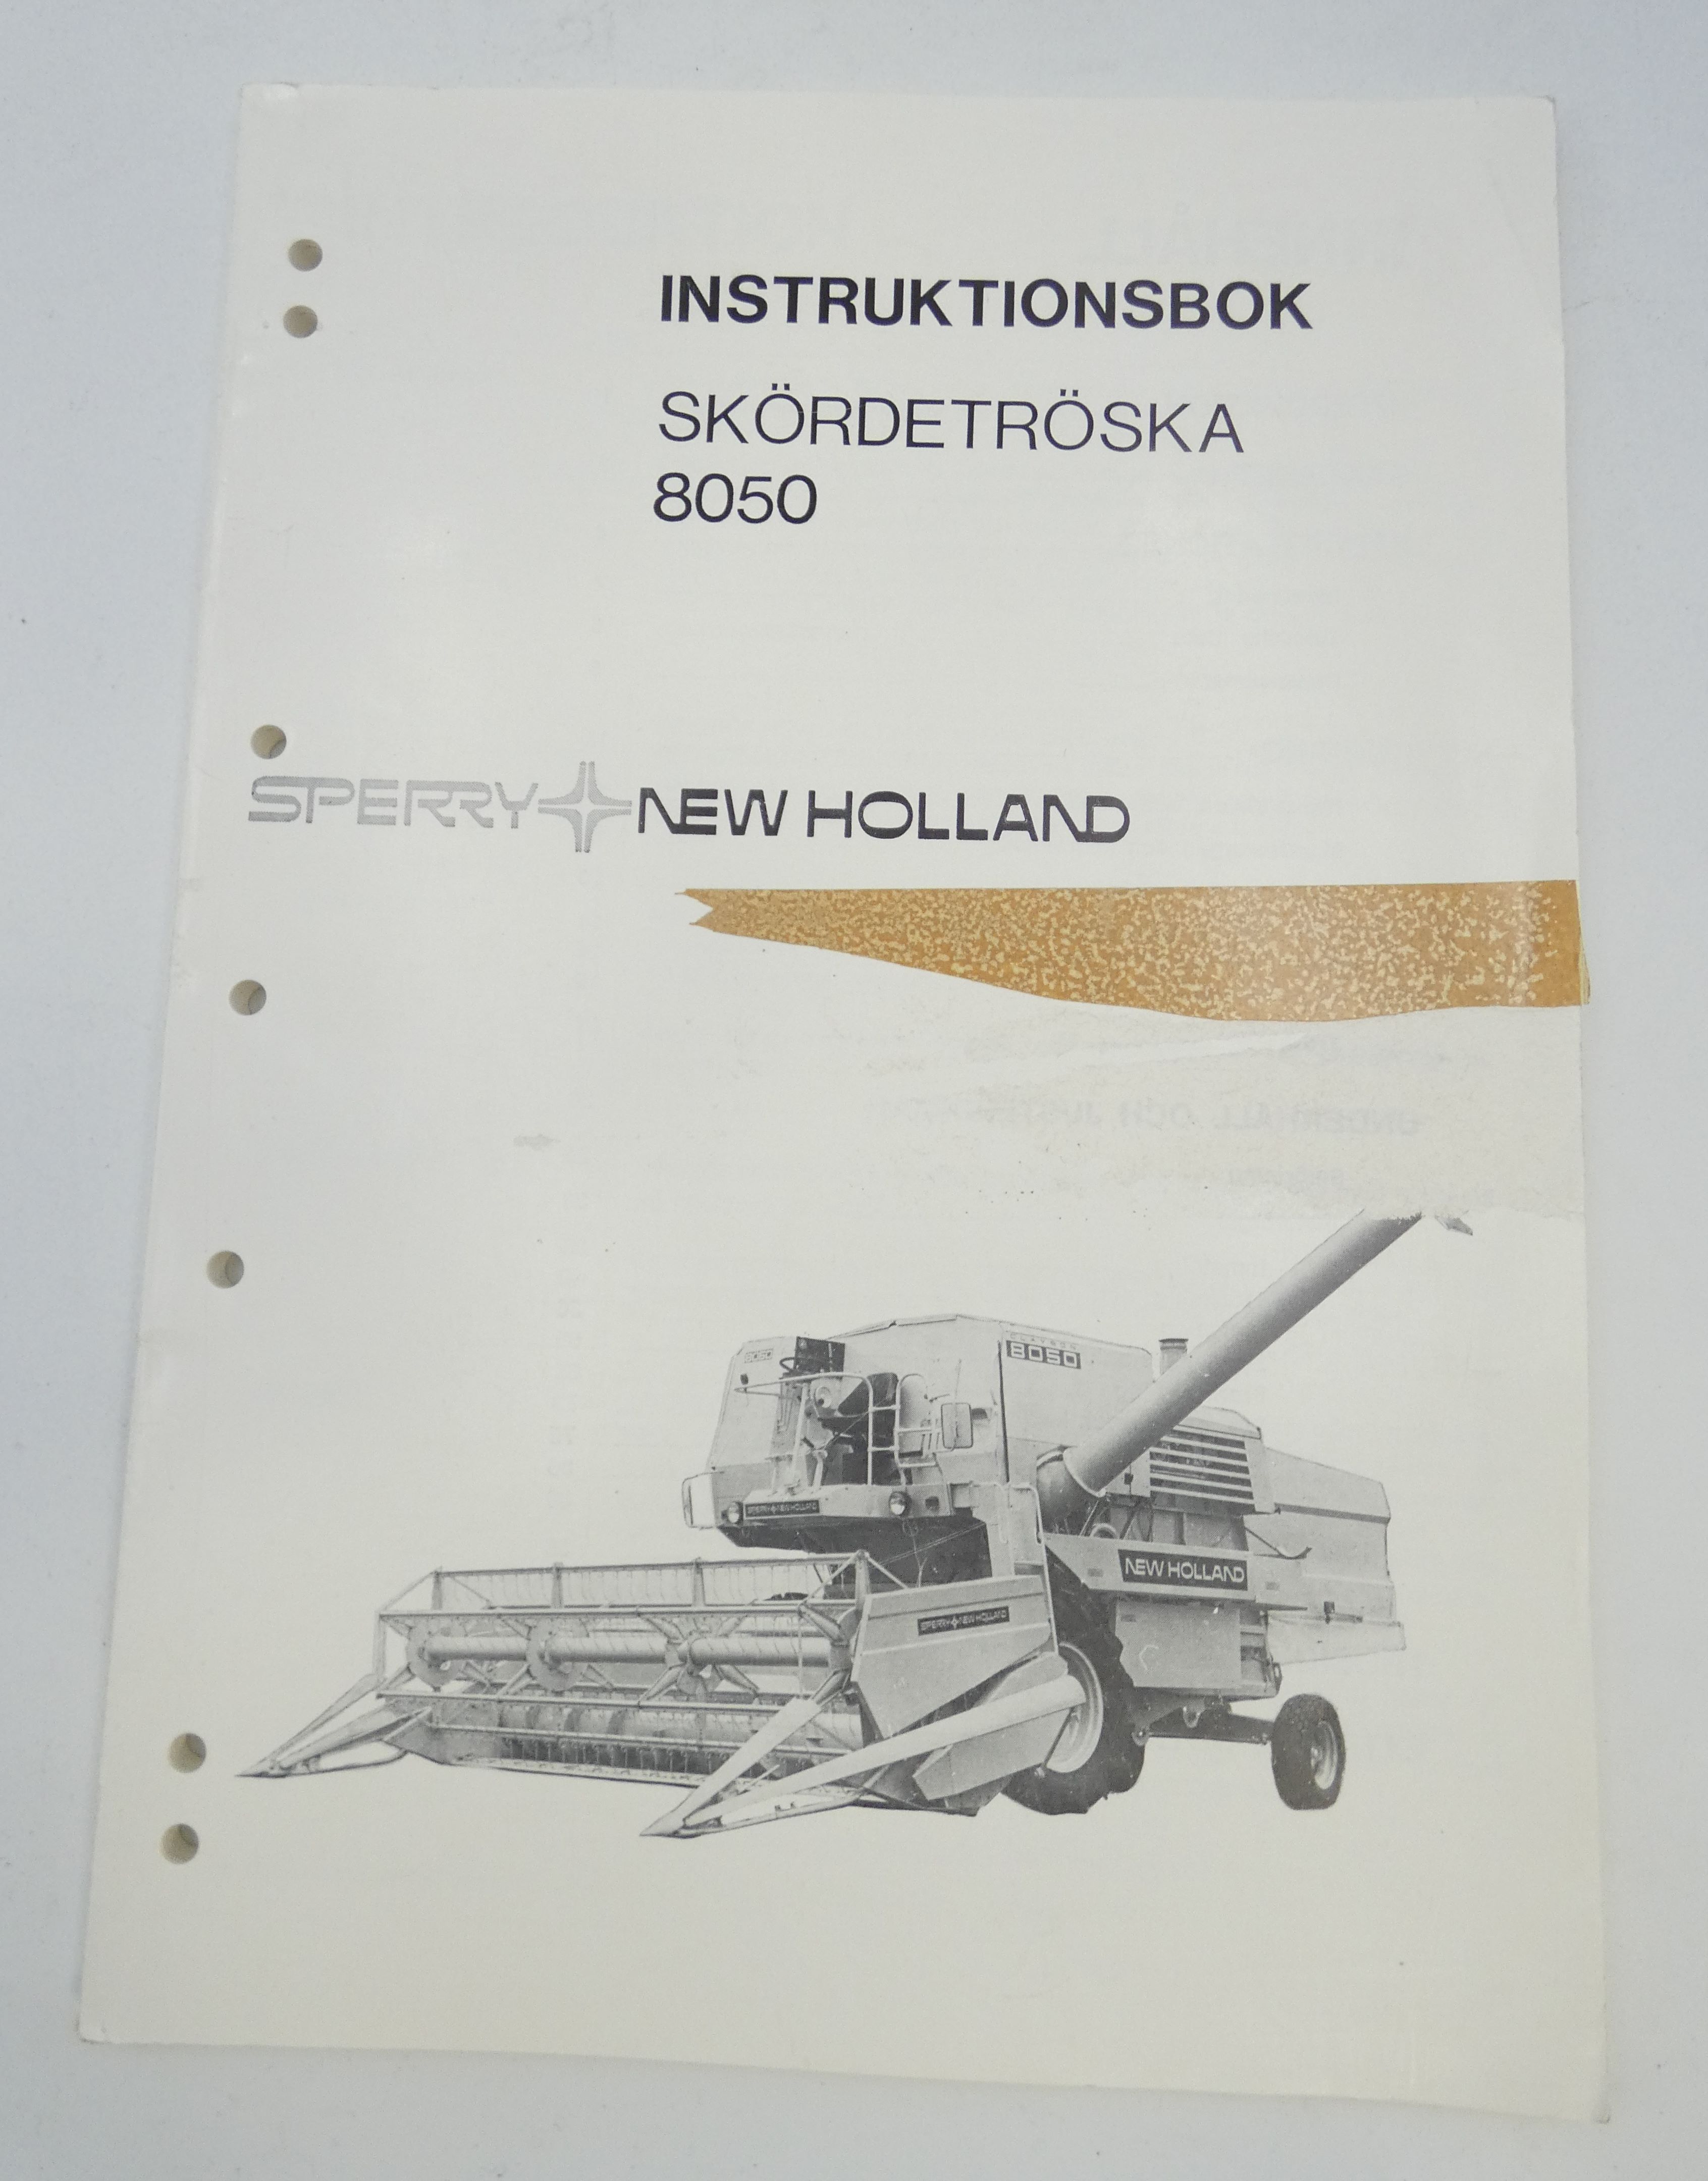 New Holland 8050 sködertröska instruktionsbok 